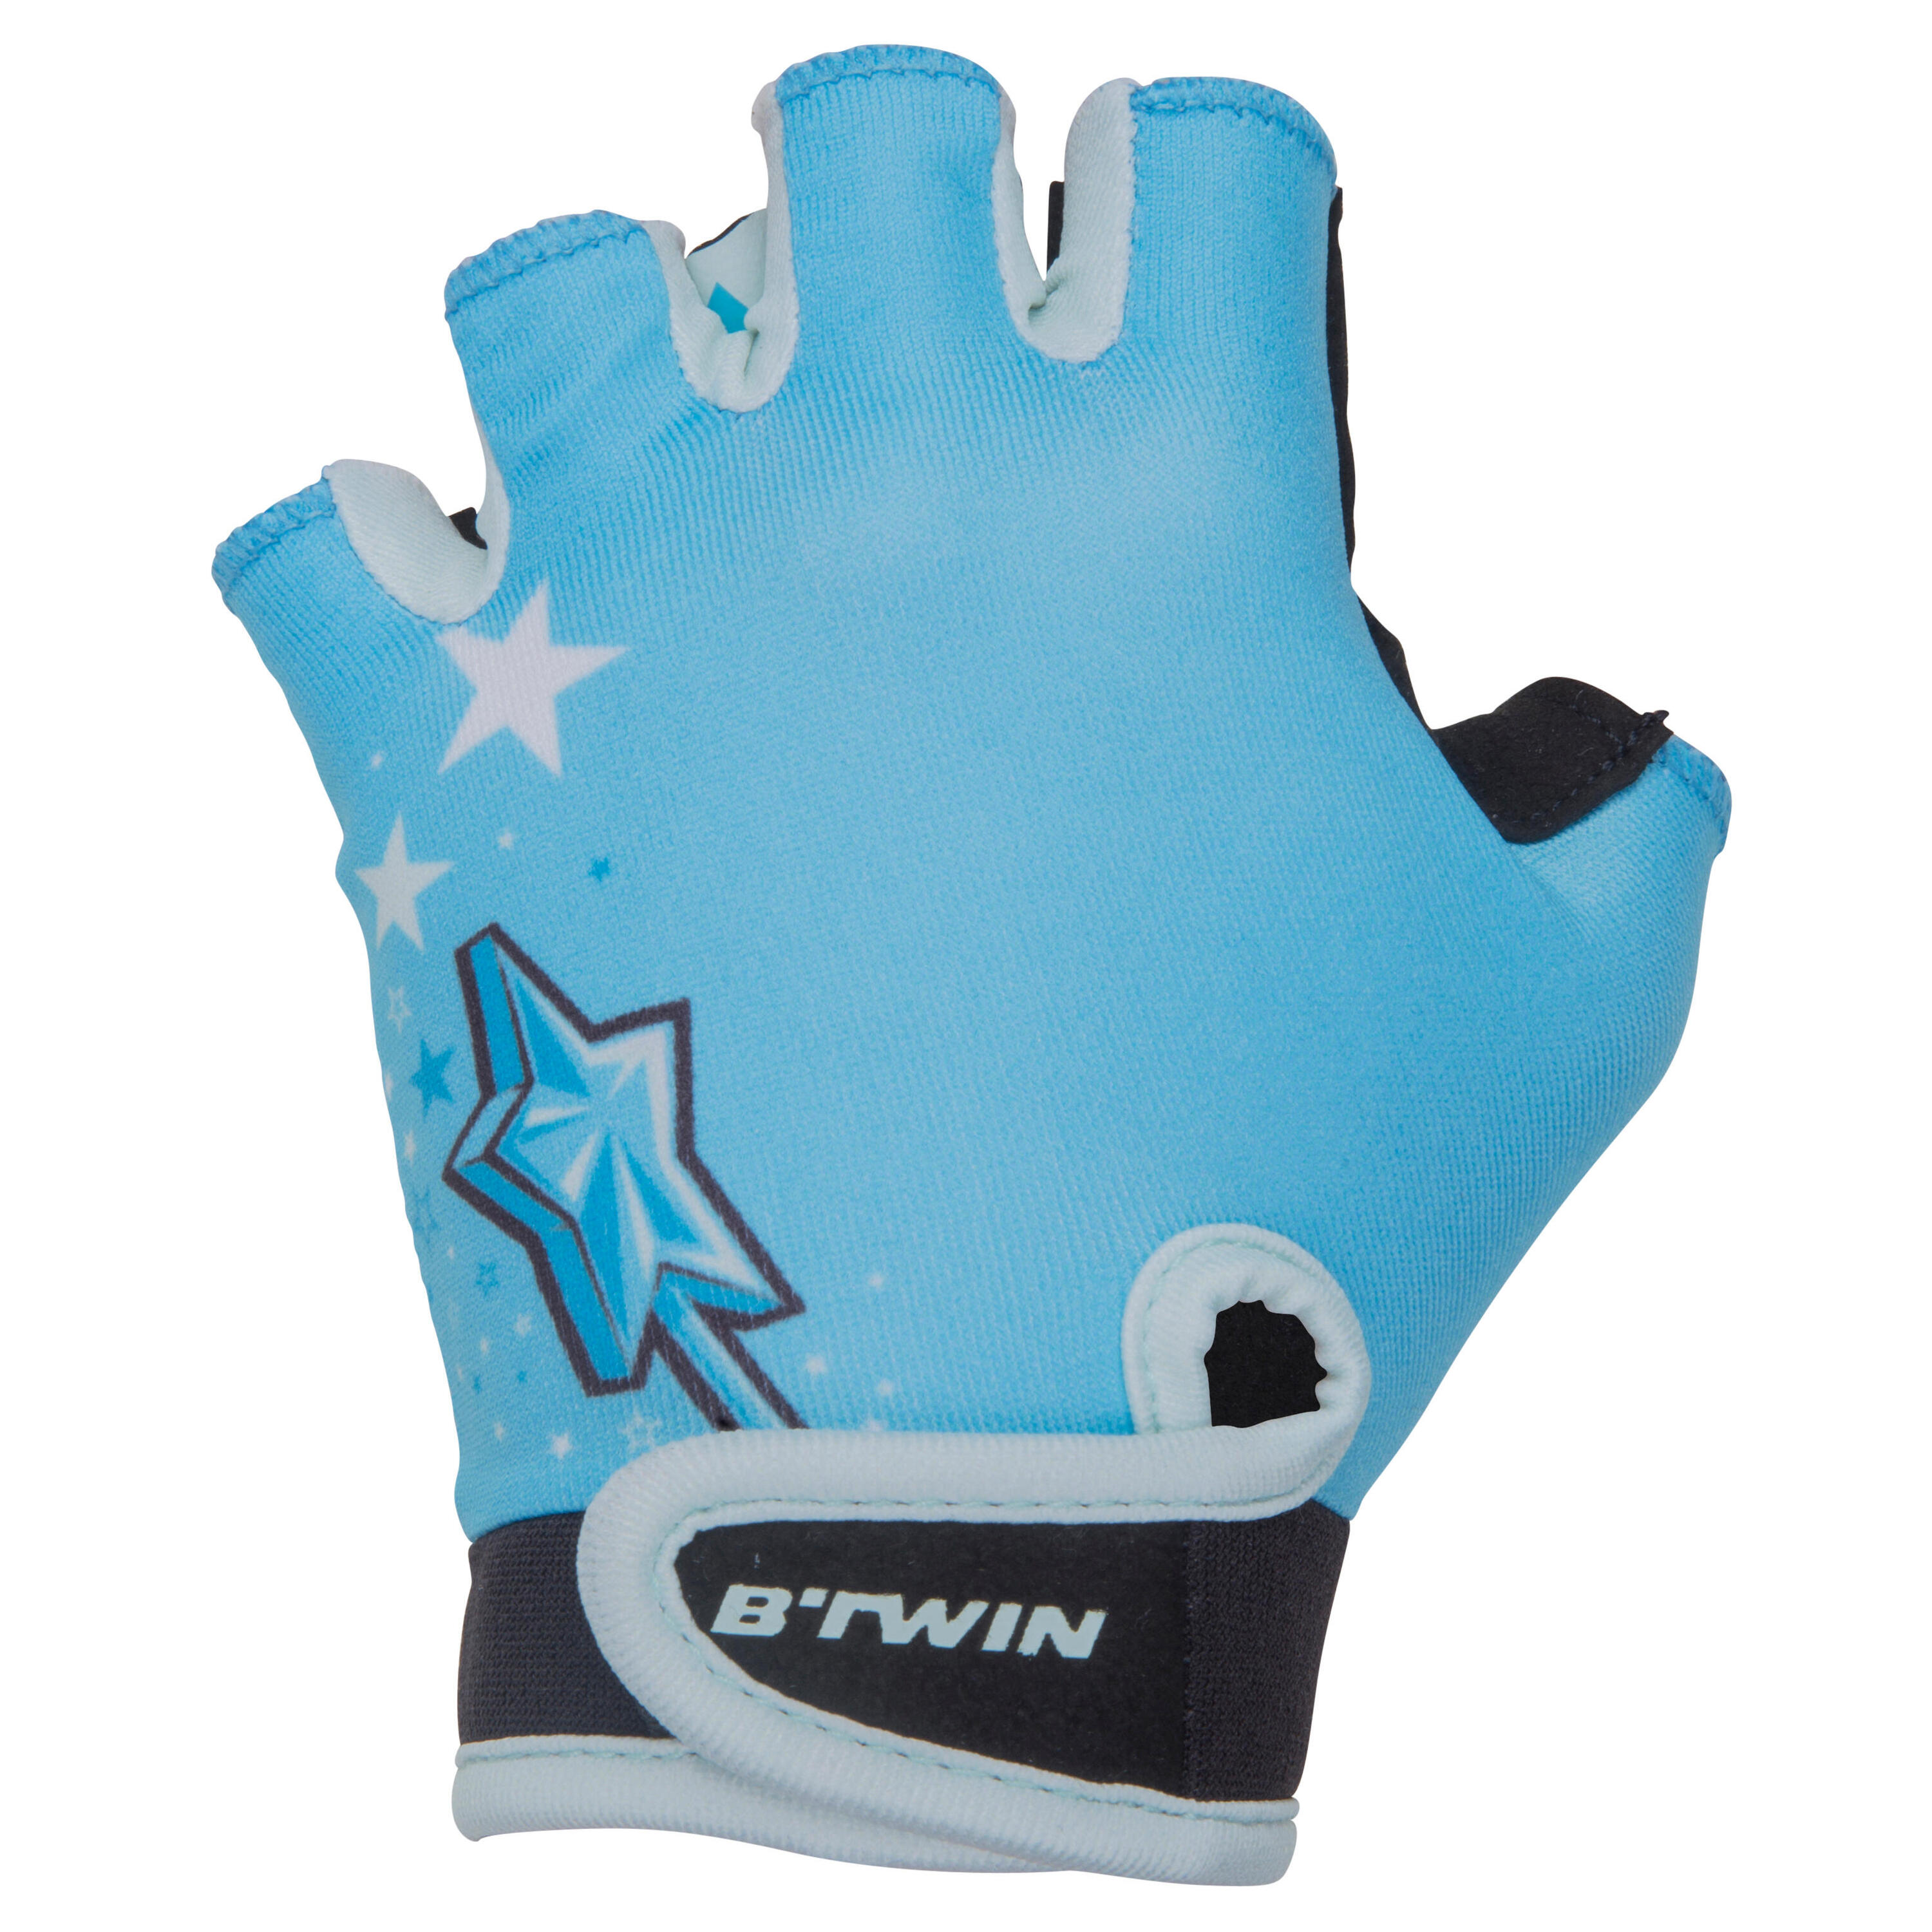 BTWIN Kids' Fingerless Cycling Gloves - Princess/Blue